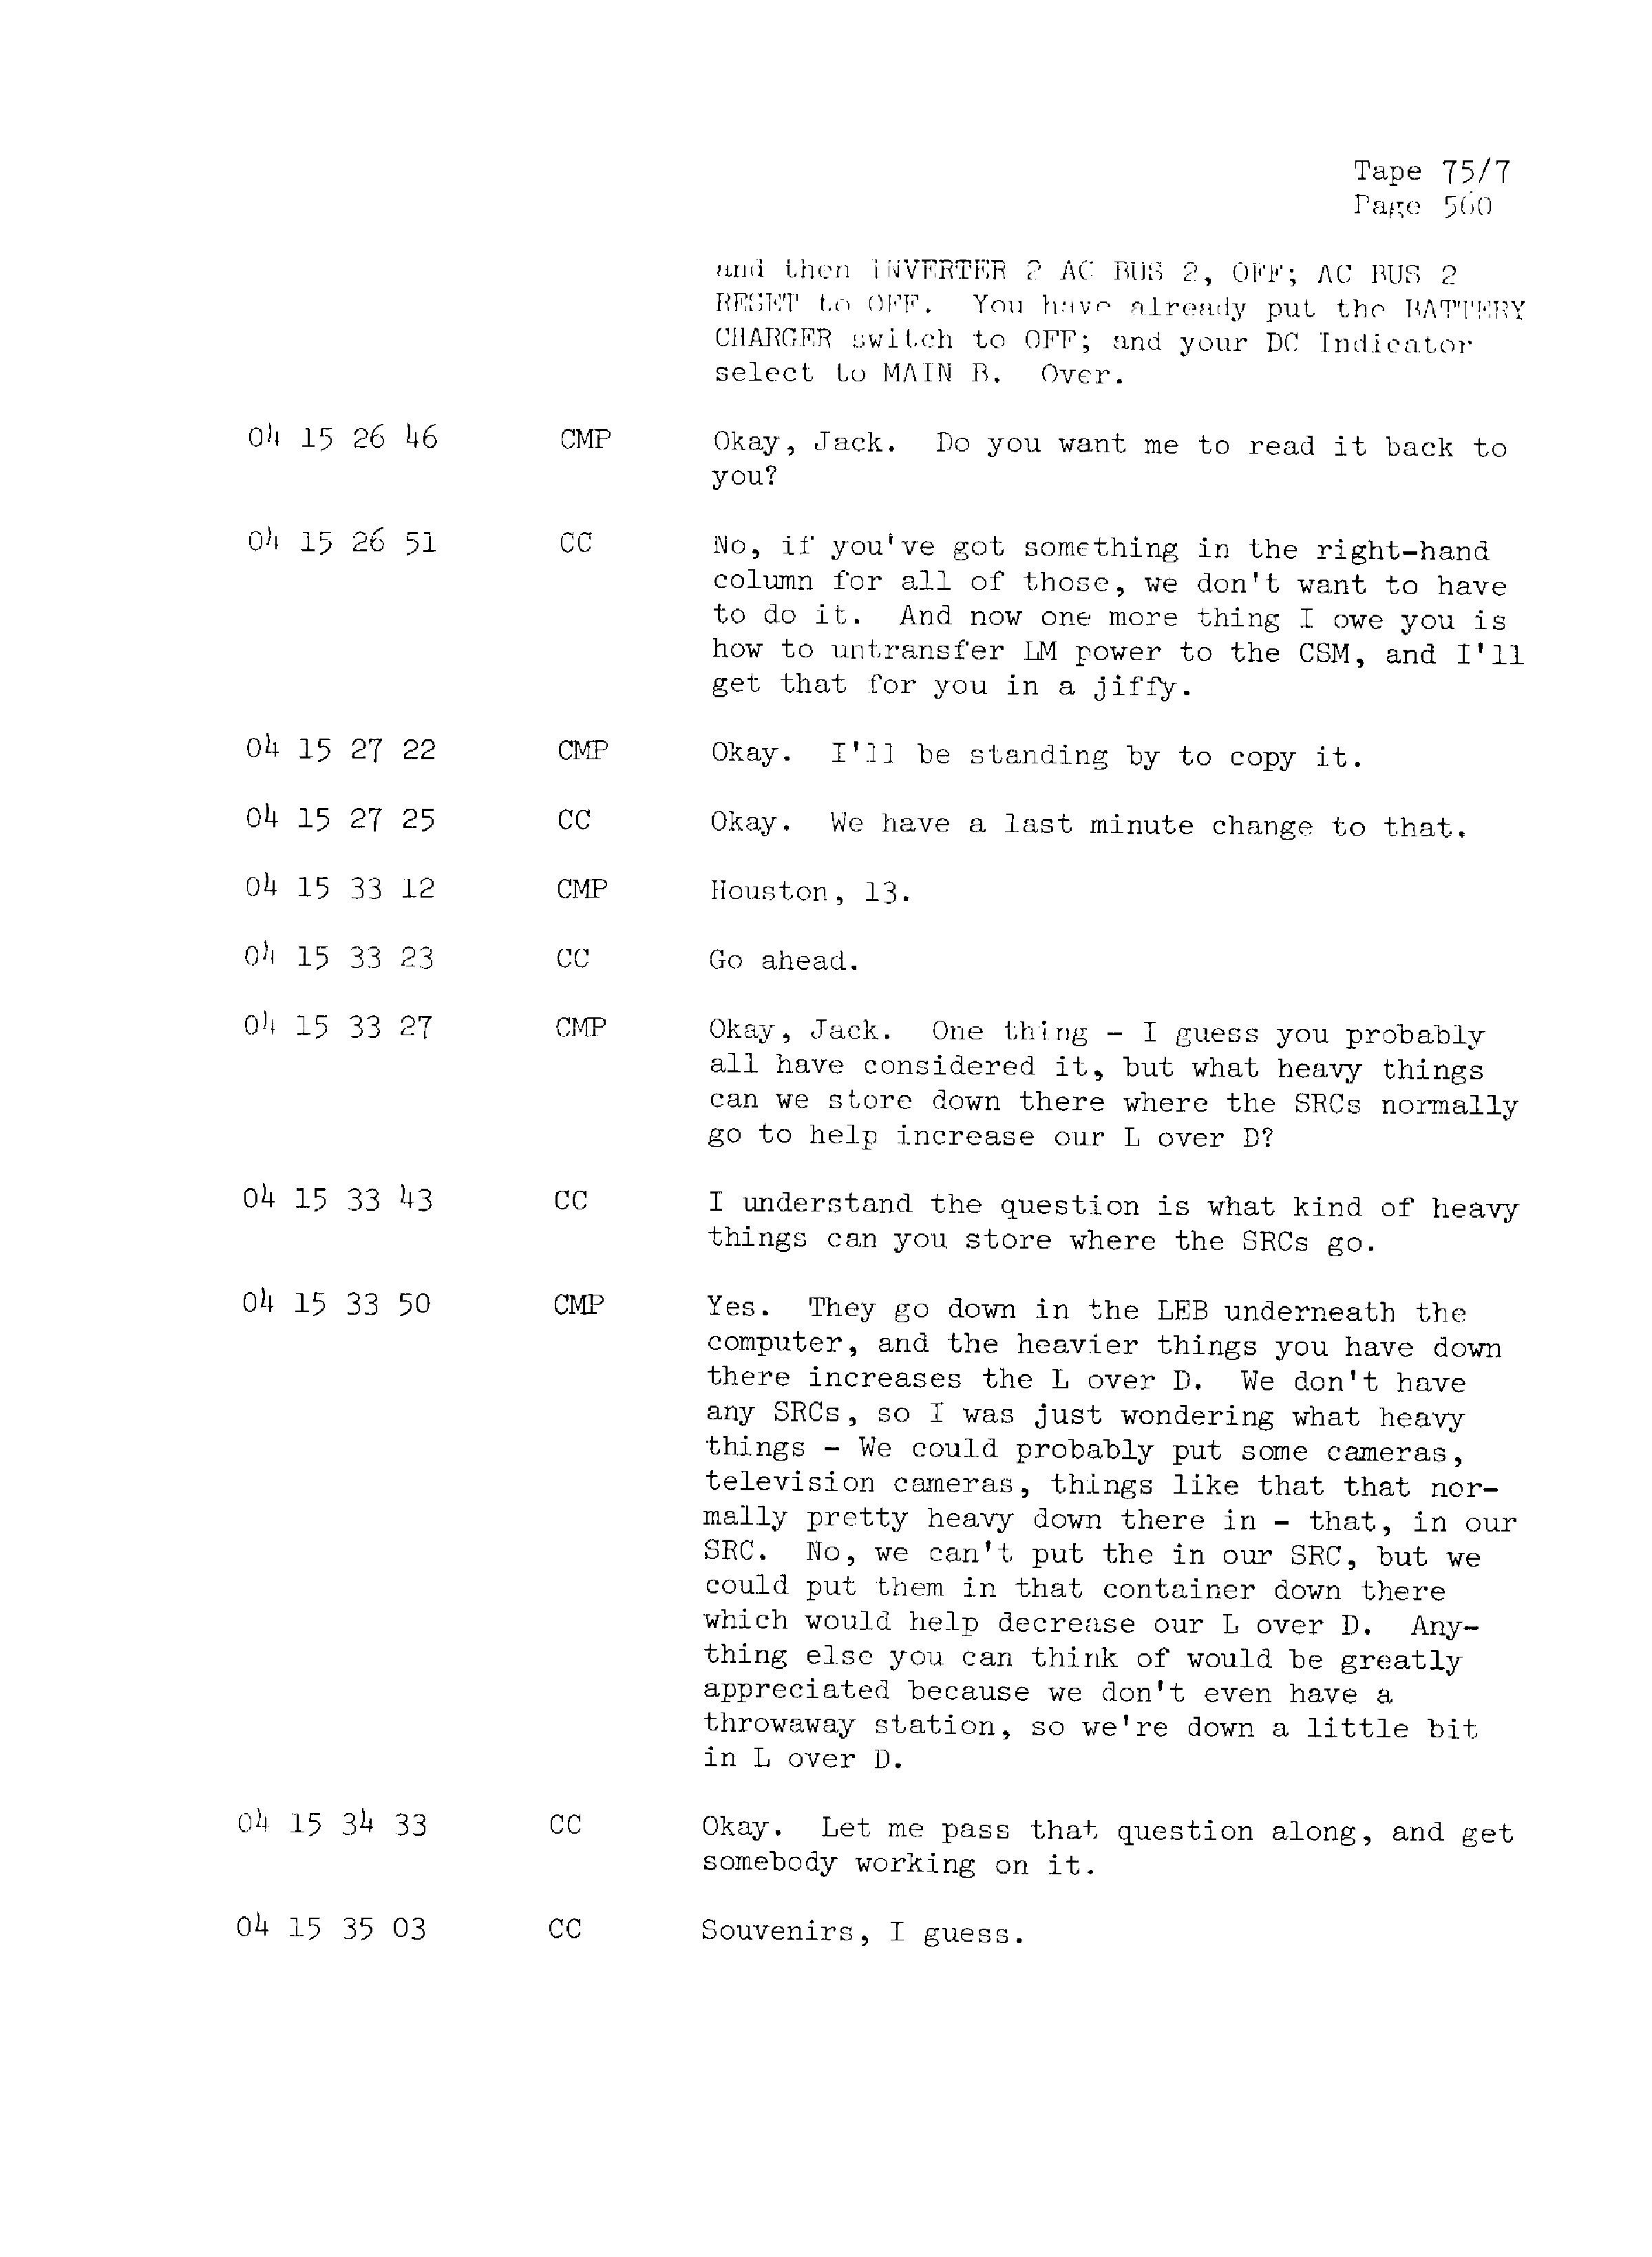 Page 567 of Apollo 13’s original transcript